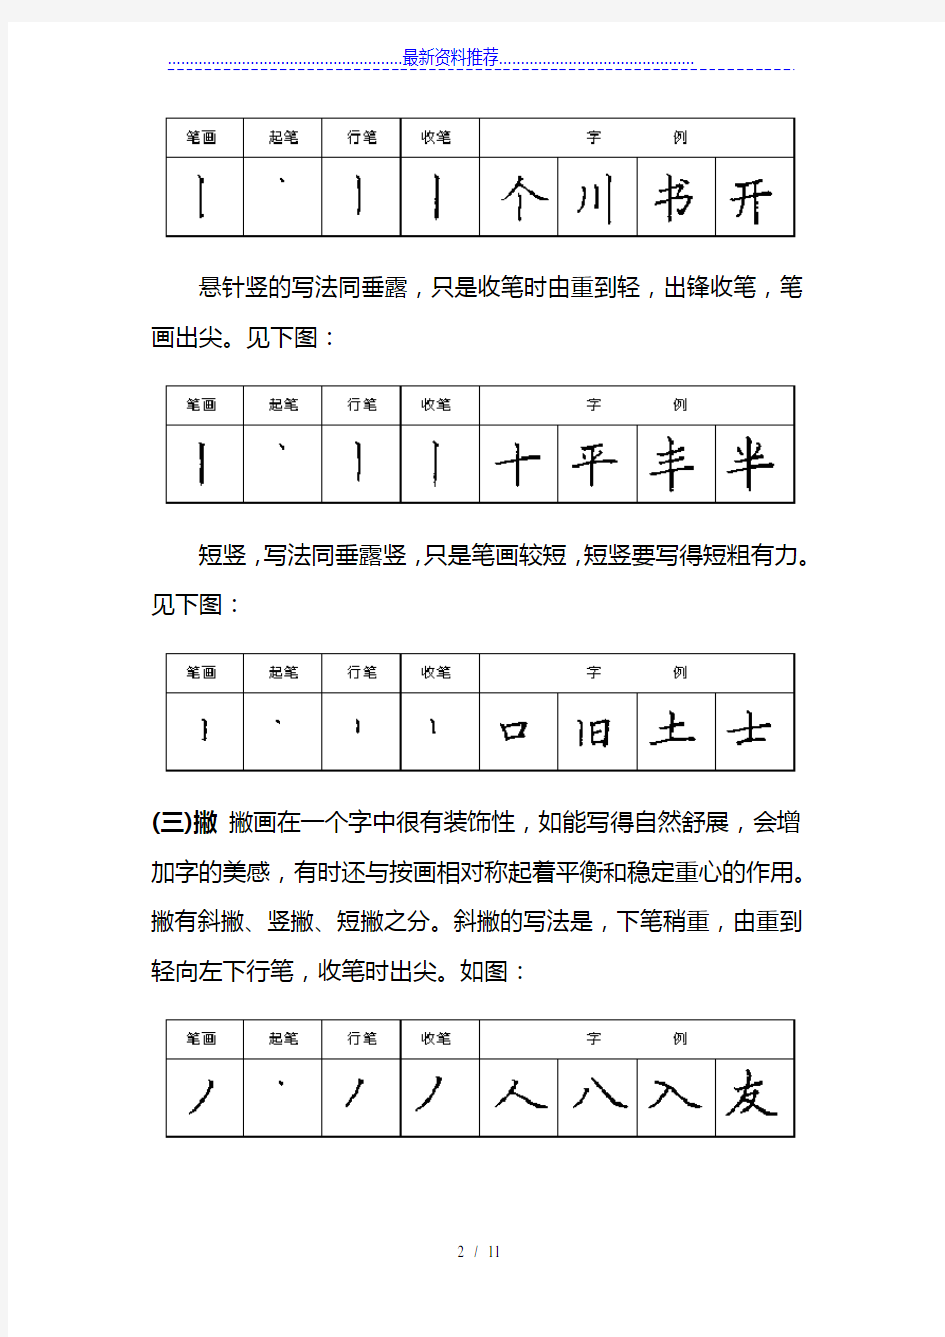 汉字笔画书写规则及技巧练习(28种基本笔画)